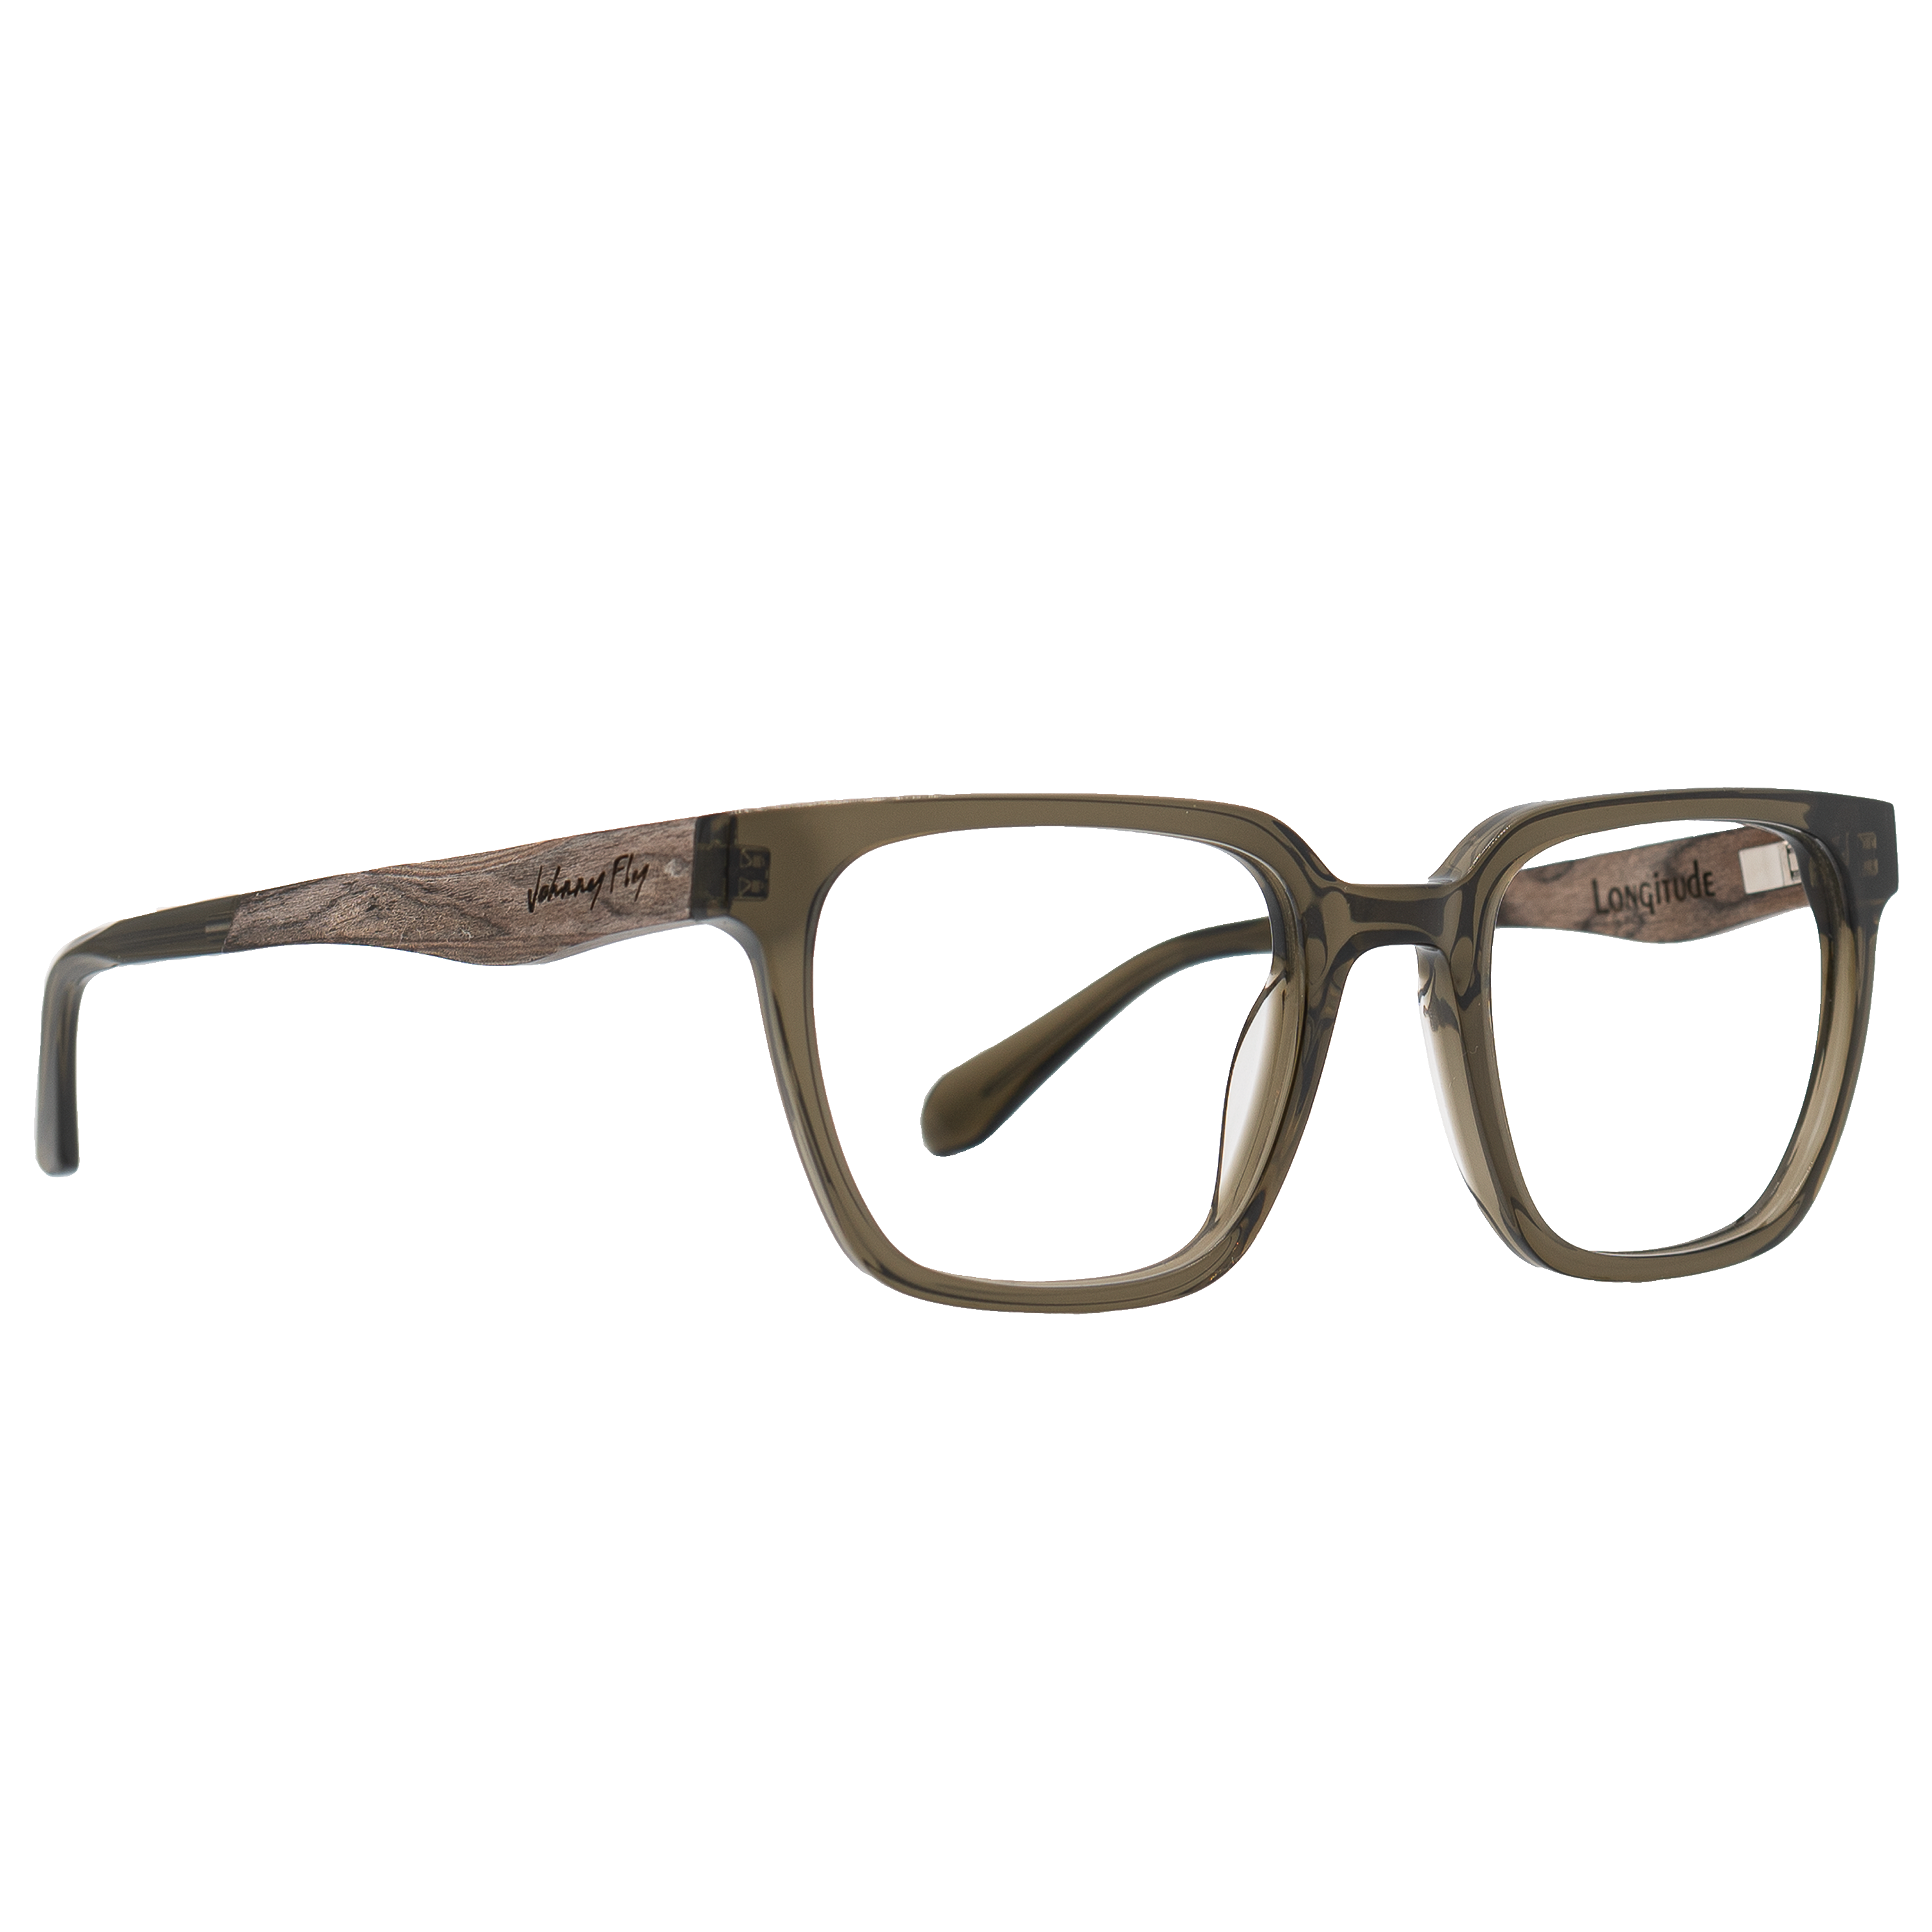 LONGITUDE BLUGARD - Olive - Blue Light Glasses - Johnny Fly Eyewear 